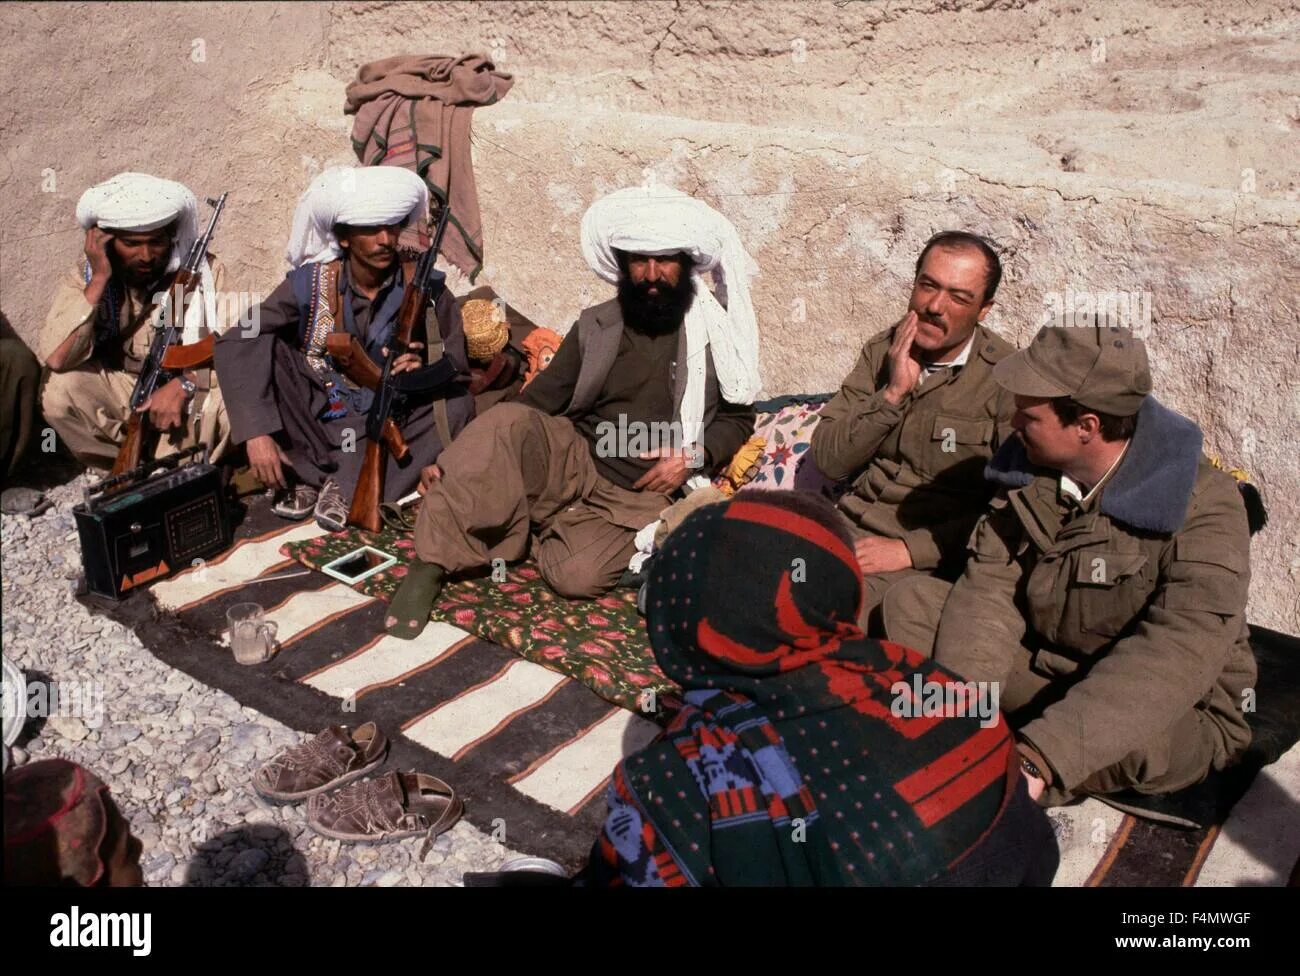 Моджахеды в Афганистане 1979. Талибы Афганистан 1979. Афганские моджахеды 1989. Белуджи в Афганистане. Военный конфликт в афганистане